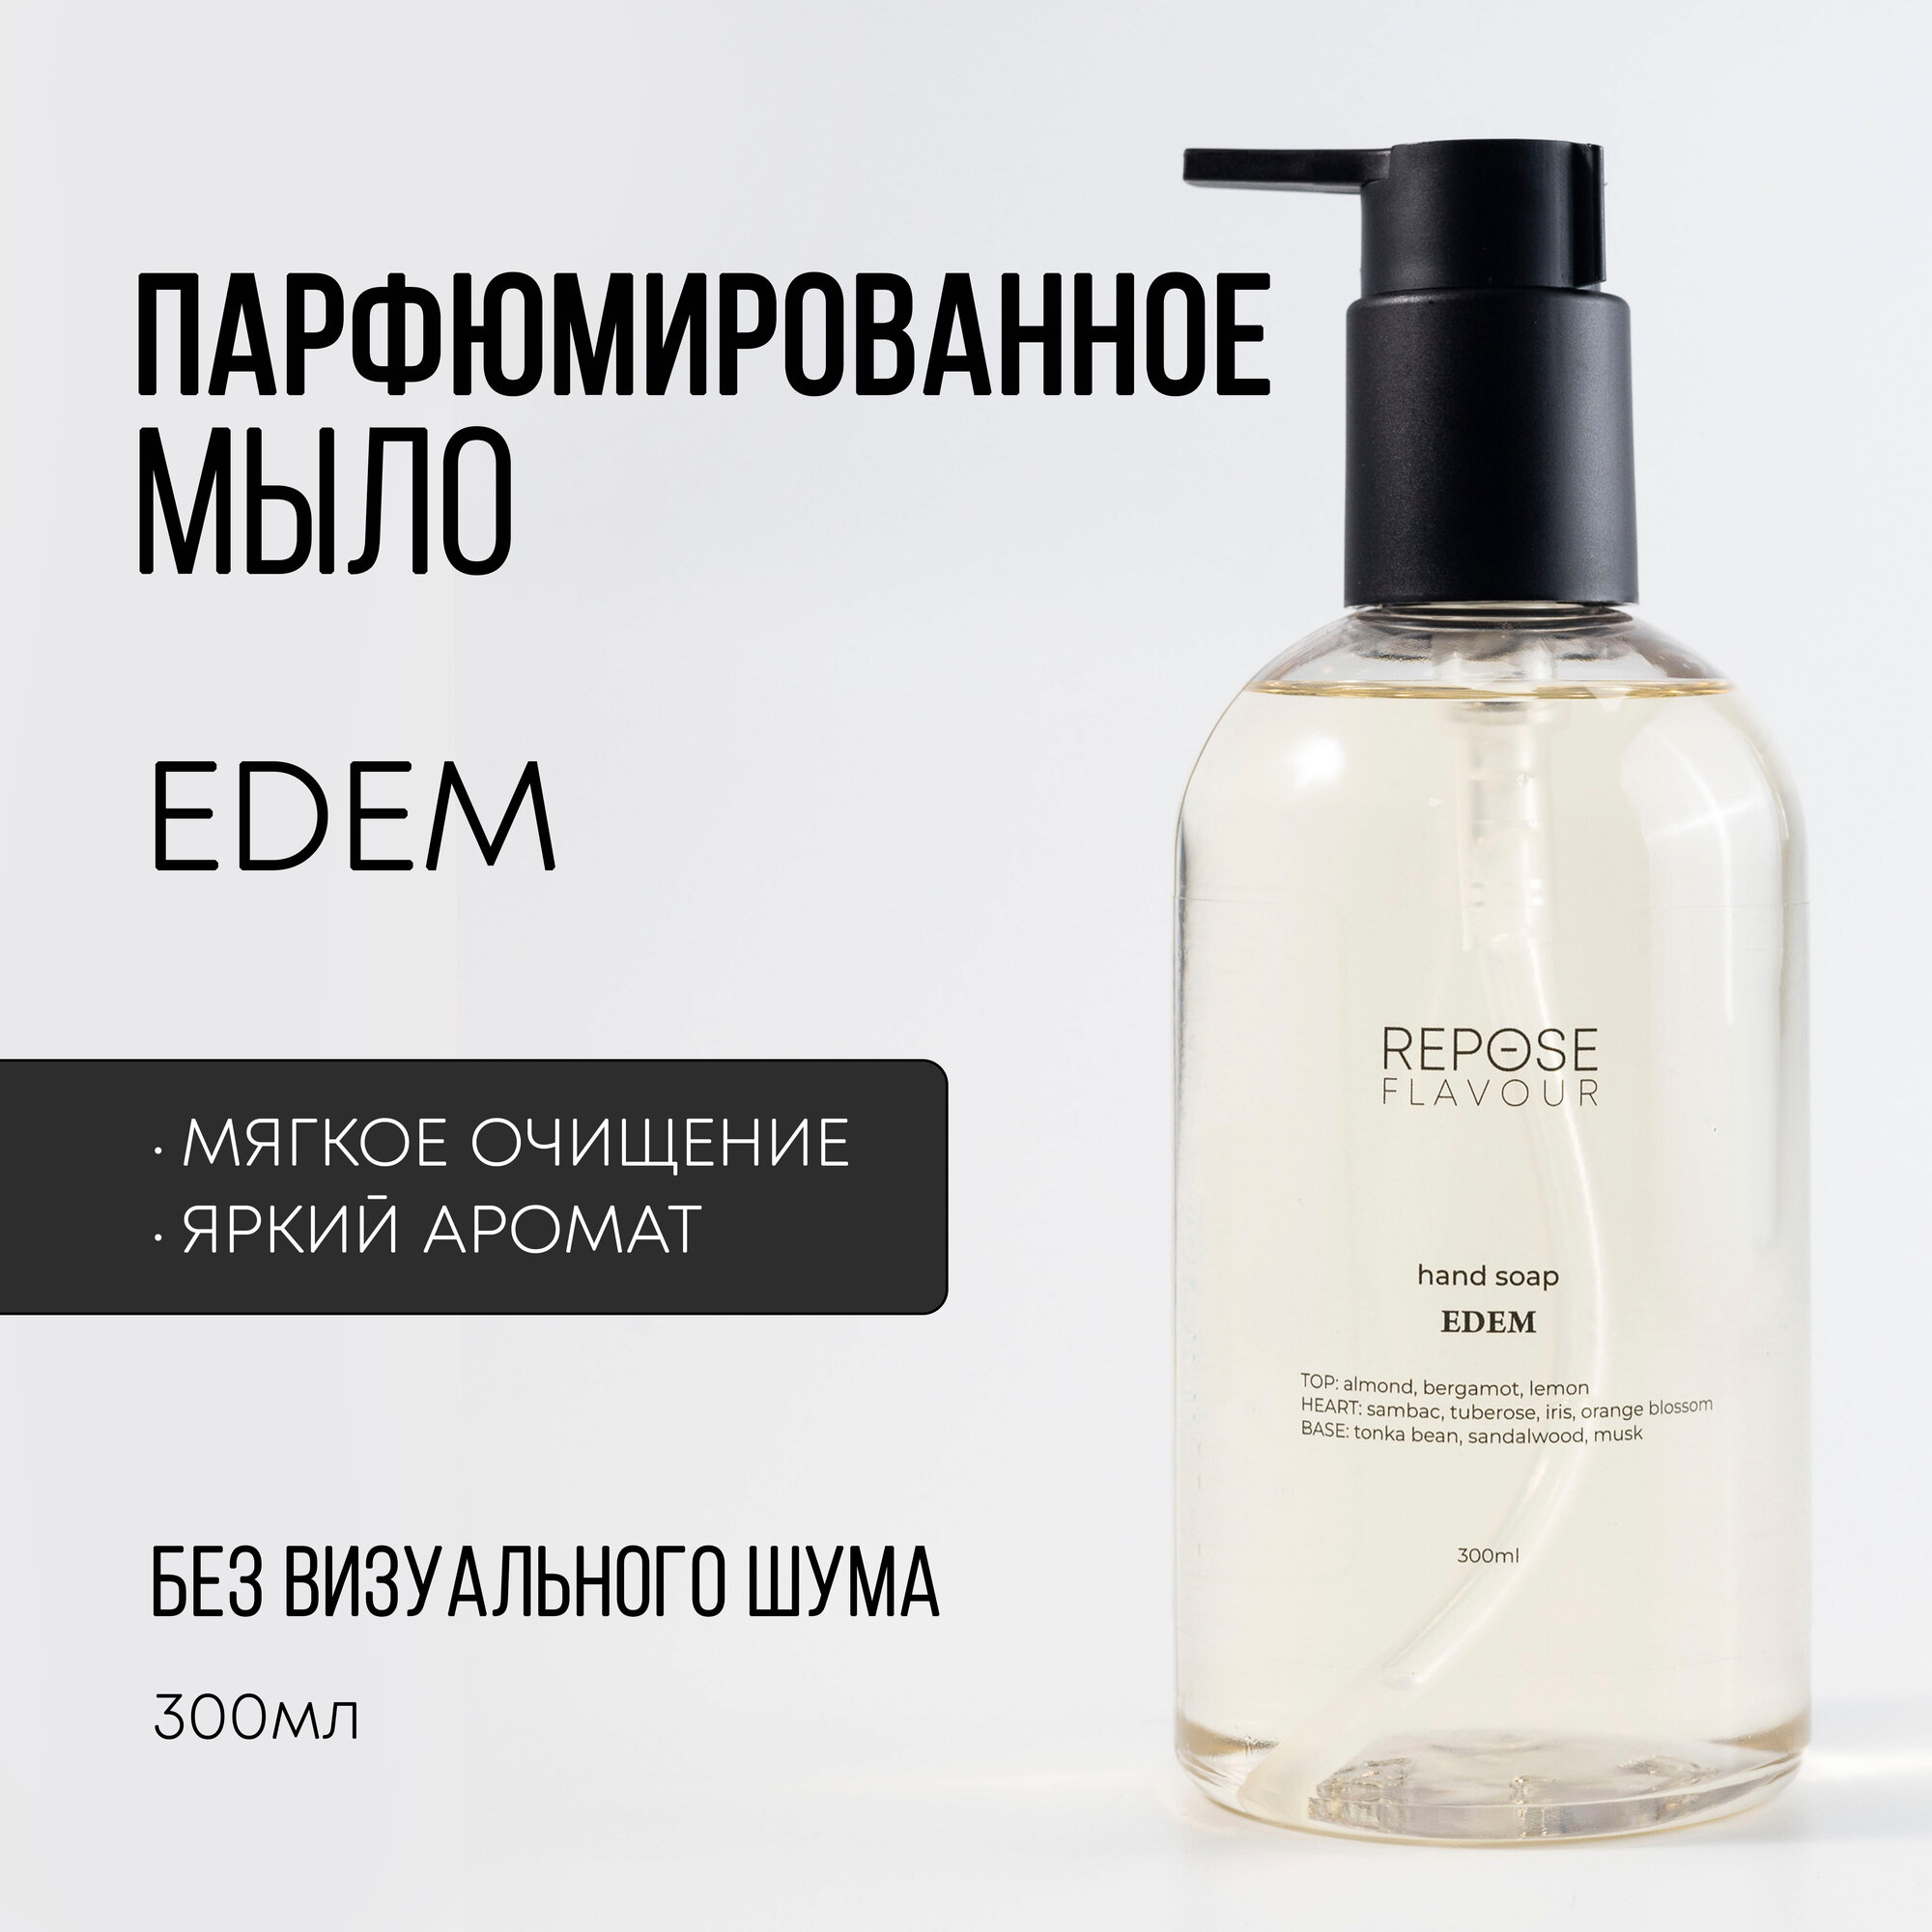 Парфюмированное жидкое мыло для рук “EDEM”, REPOSE FLAVOUR, 300 мл